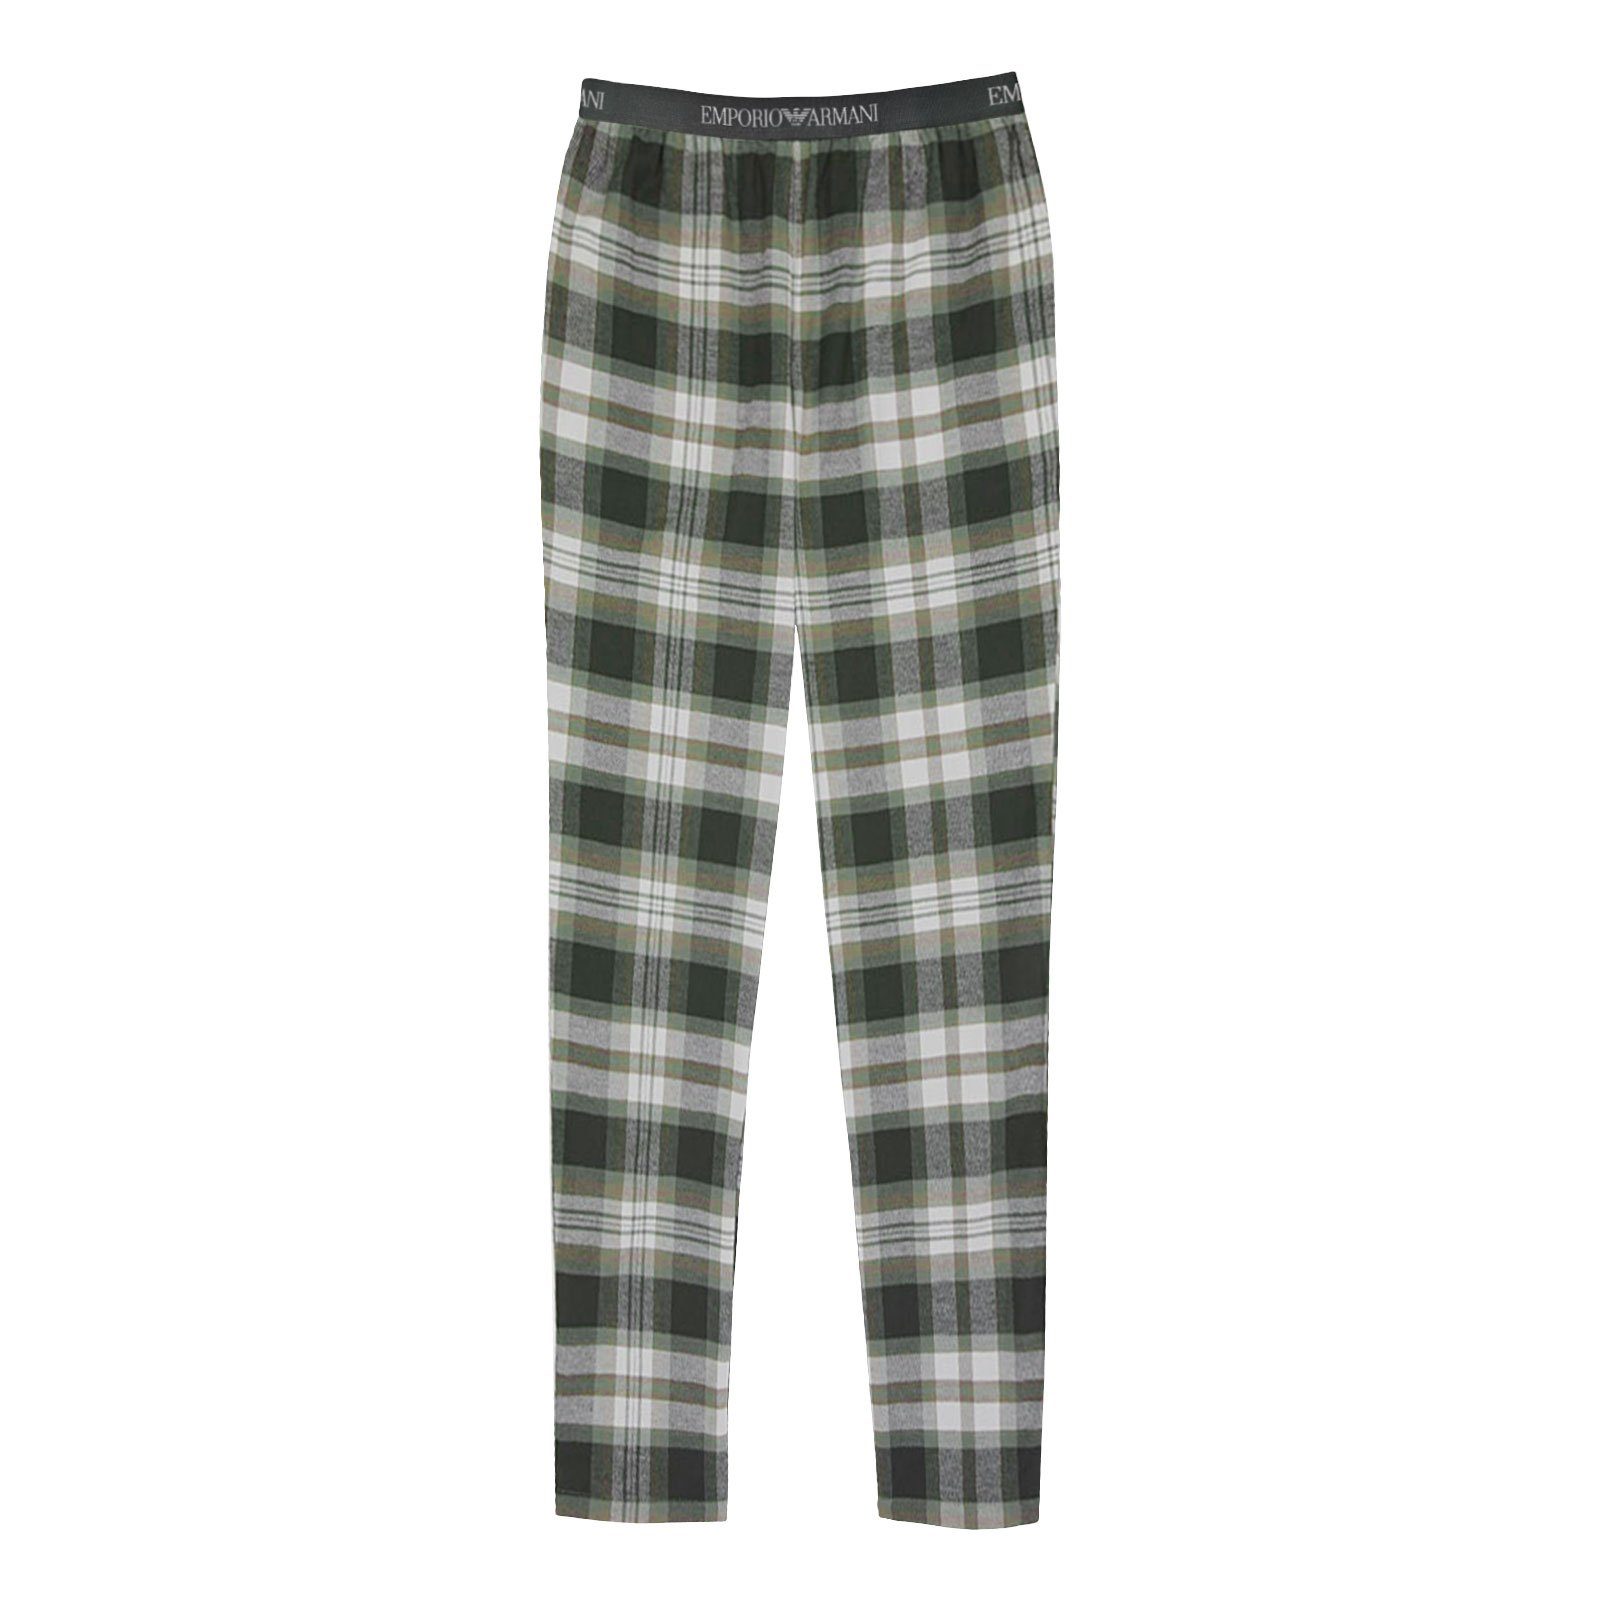 Emporio Armani Pyjamahose Loungewear Schlafhose mit umlaufendem Markenschriftzug auf Komfortbund 16185 oliv checked